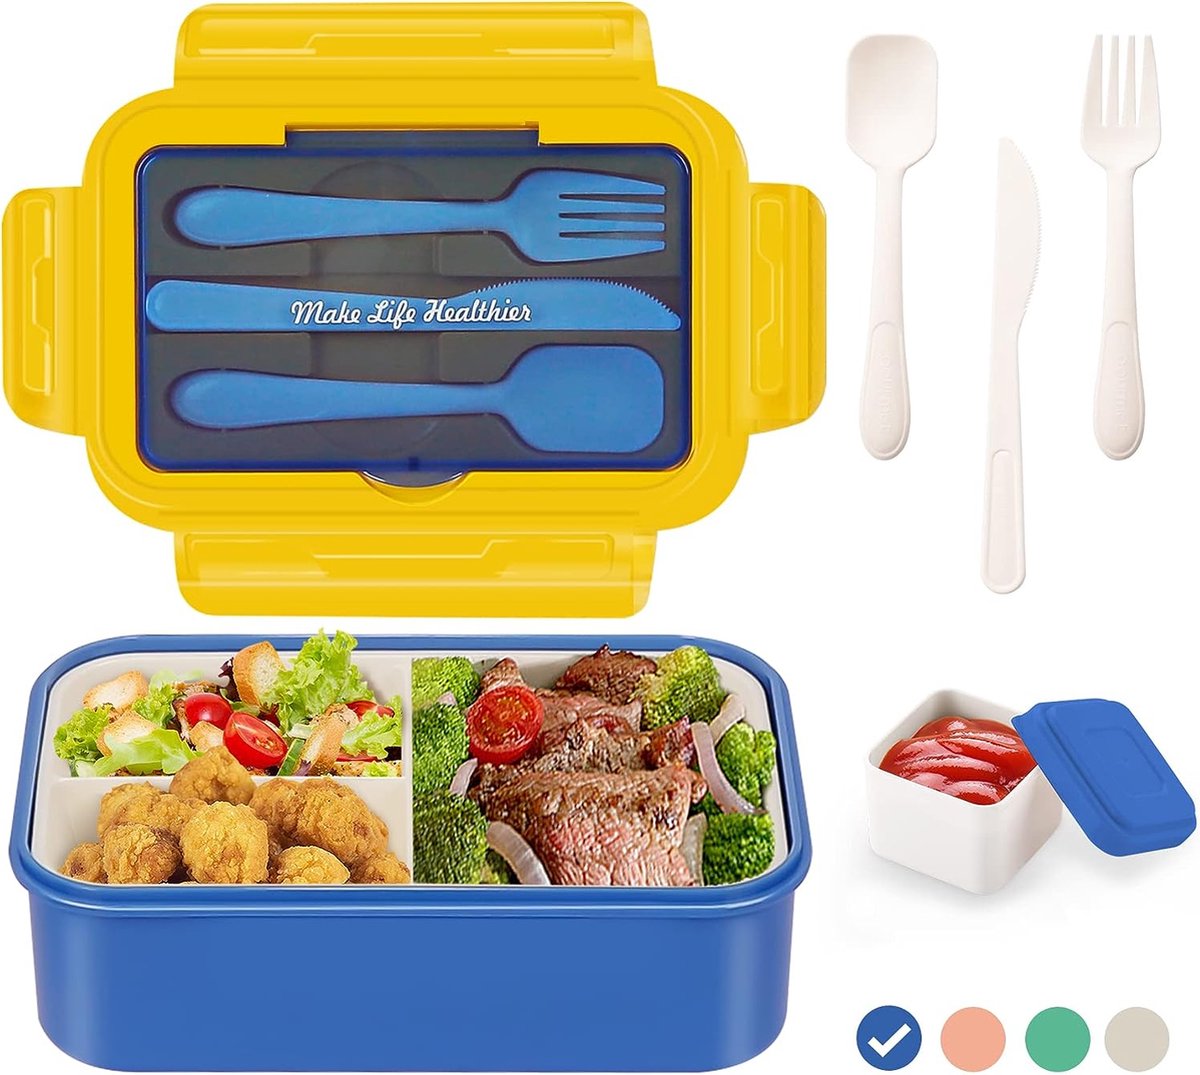 Lunchbox met 3 vakken - Blauw/geel - 1400 ml - Broodtrommel met bestek en extra bakje - Snackbox voor school, werk, picknick - Magnetron/vaatwasserbestendig